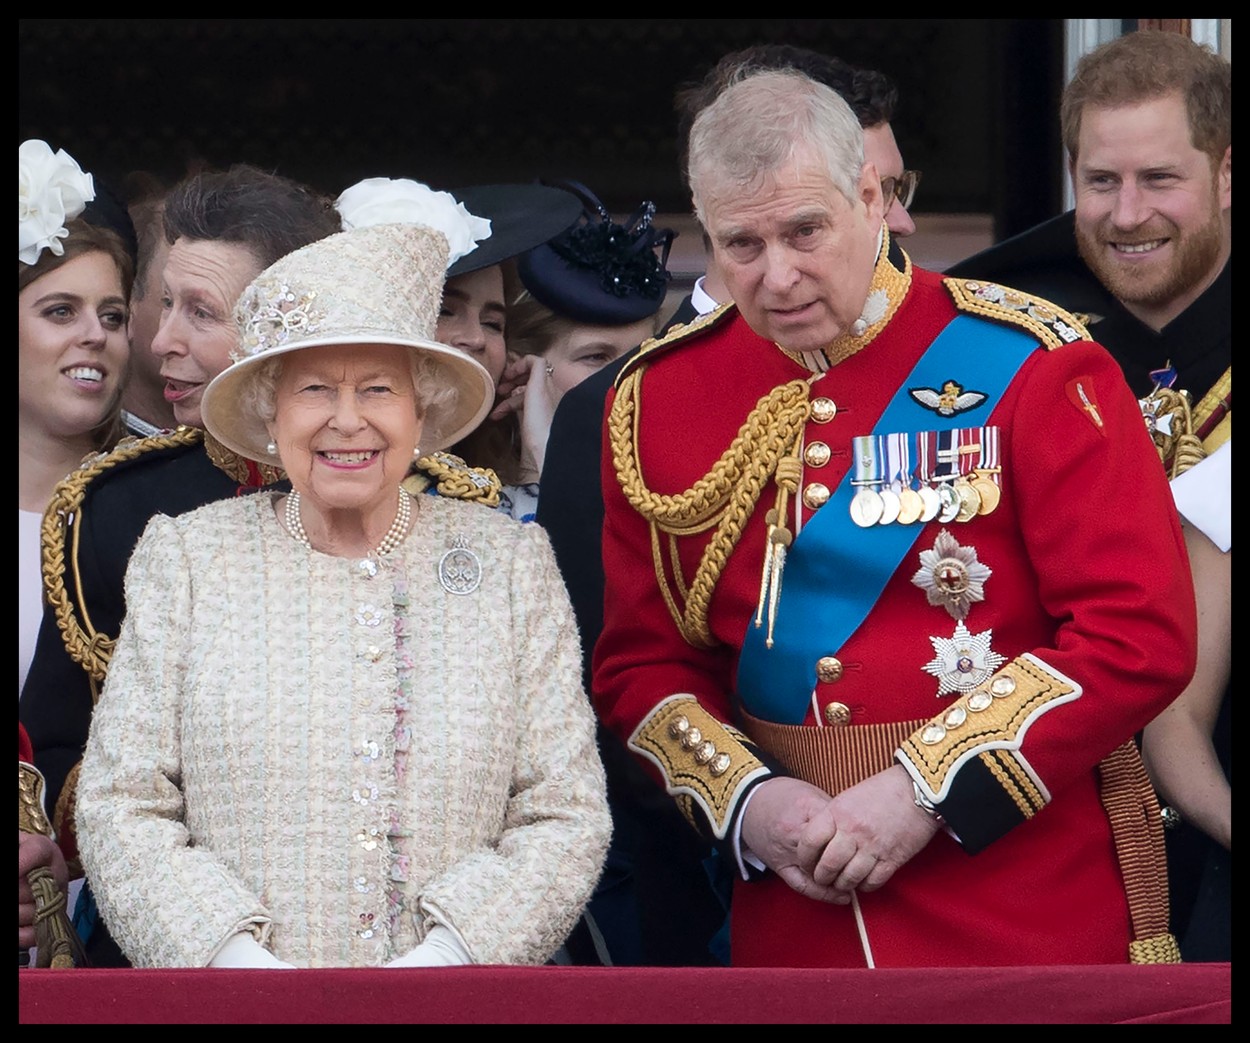 Regina Elisabeta i-a retras Prințului Andrew titlurile regale și militare, în urma acuzațiilor din cazul Epstein